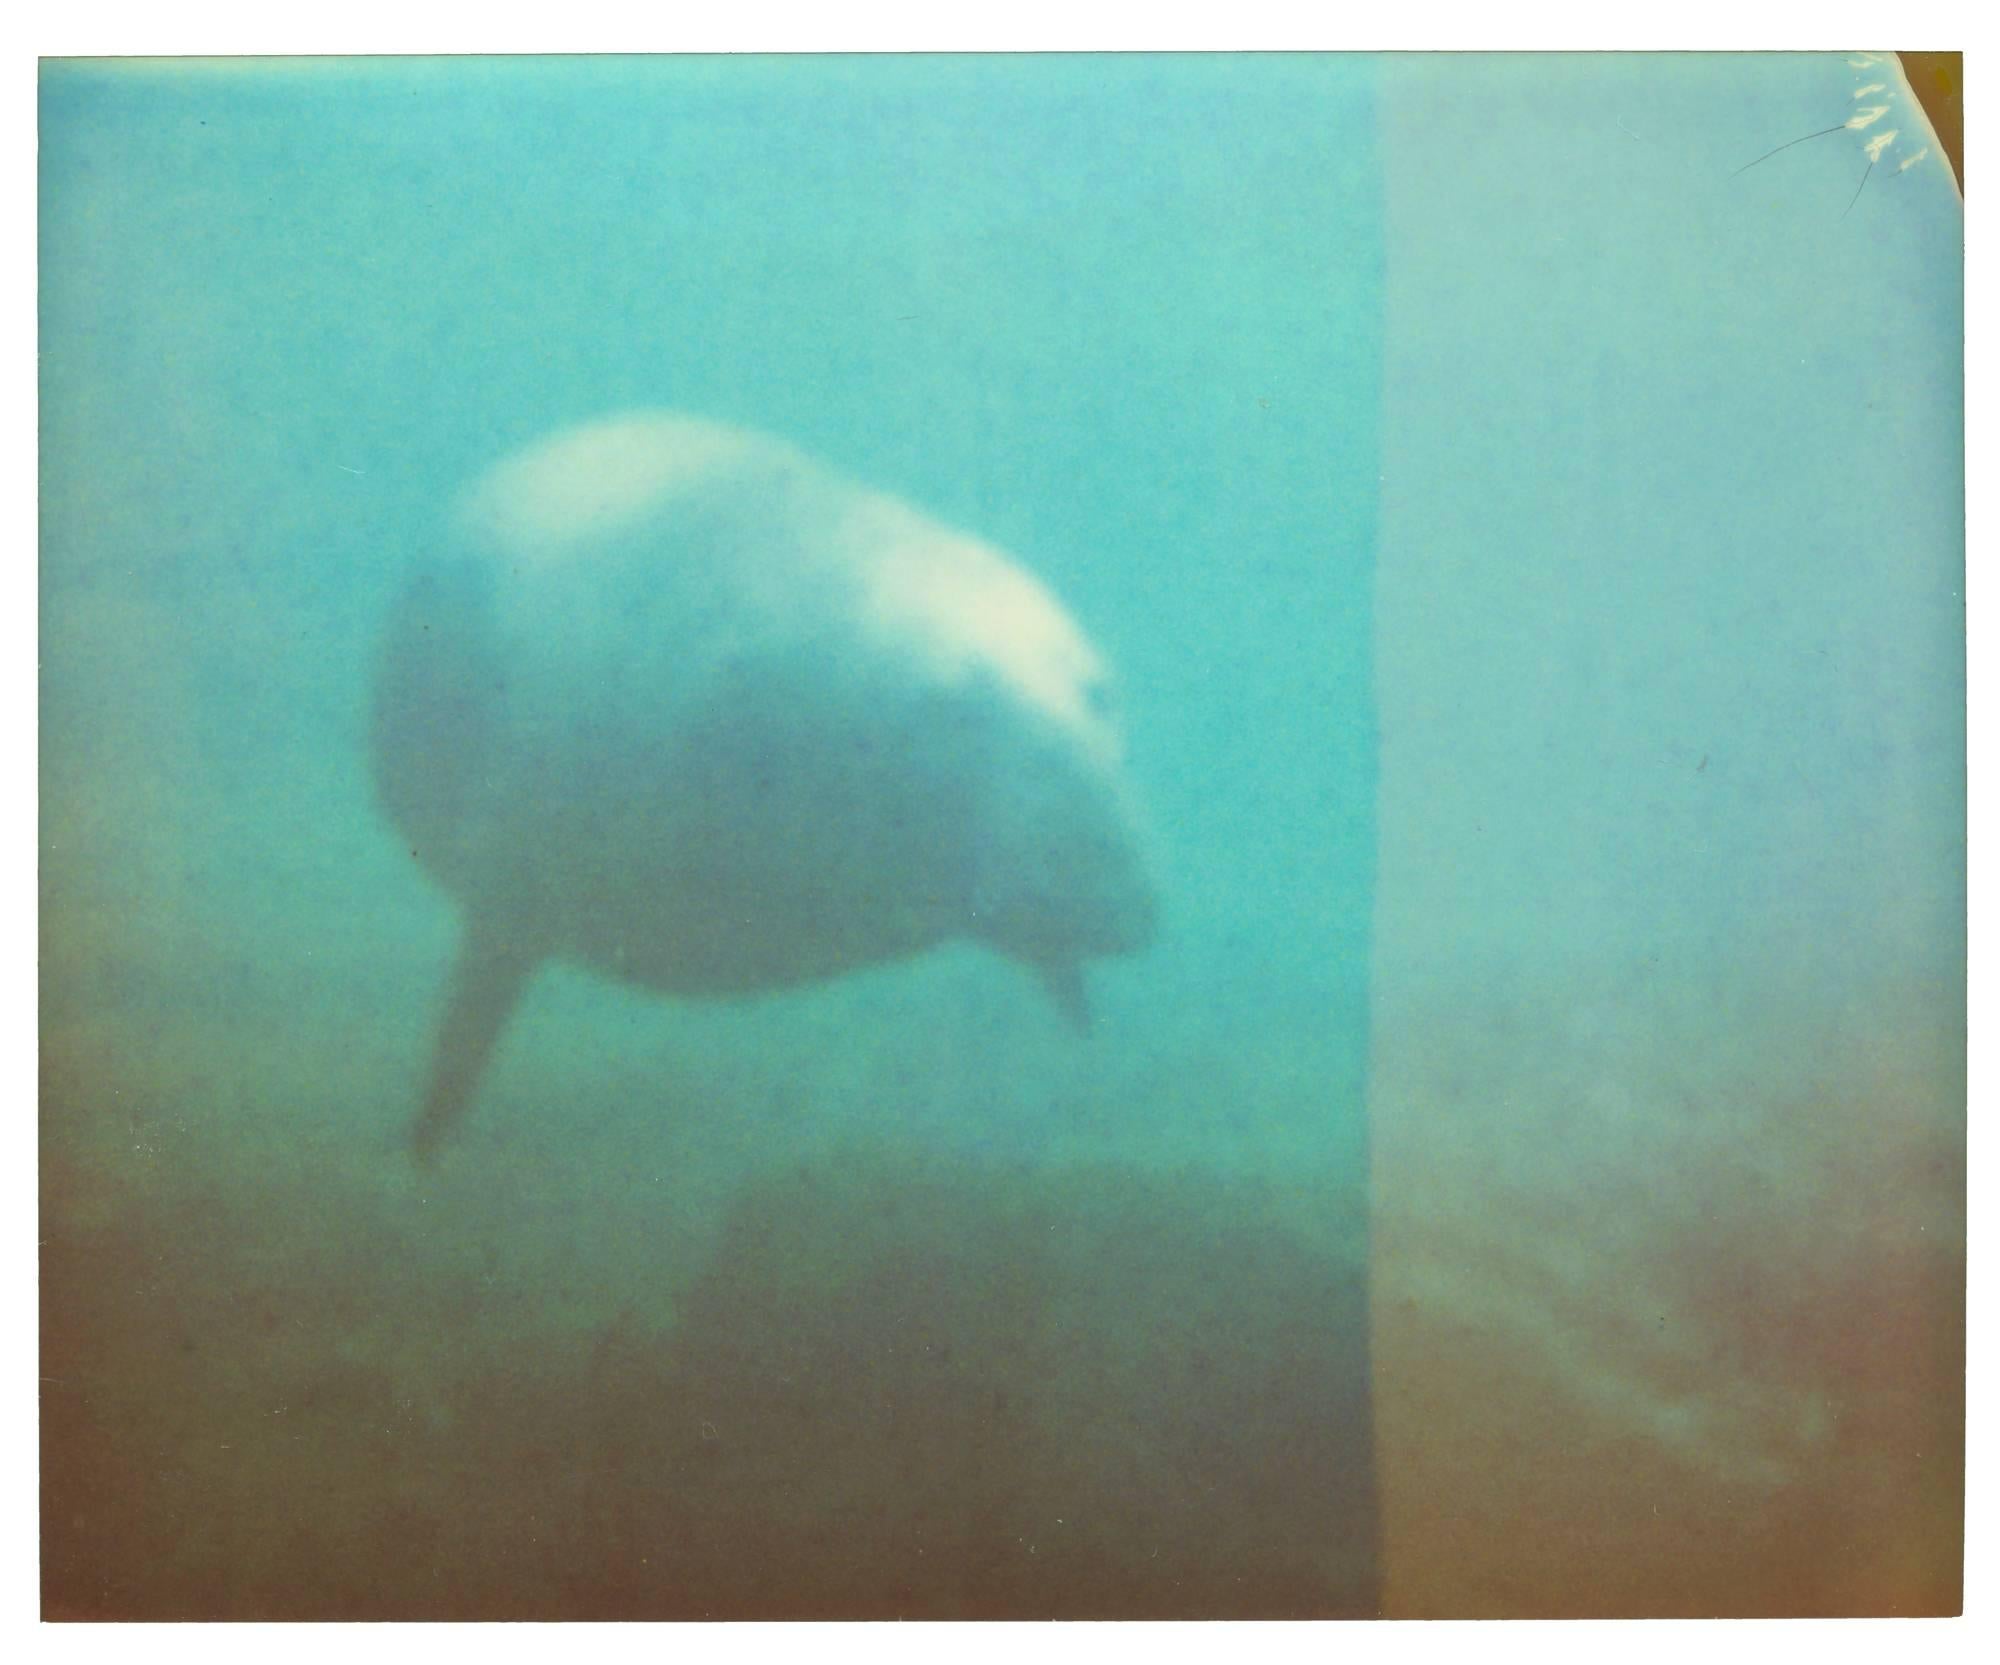 Dugong - Stay, Contemporaneo, Astratto, Paesaggio, USA, Polaroid, Fotografia